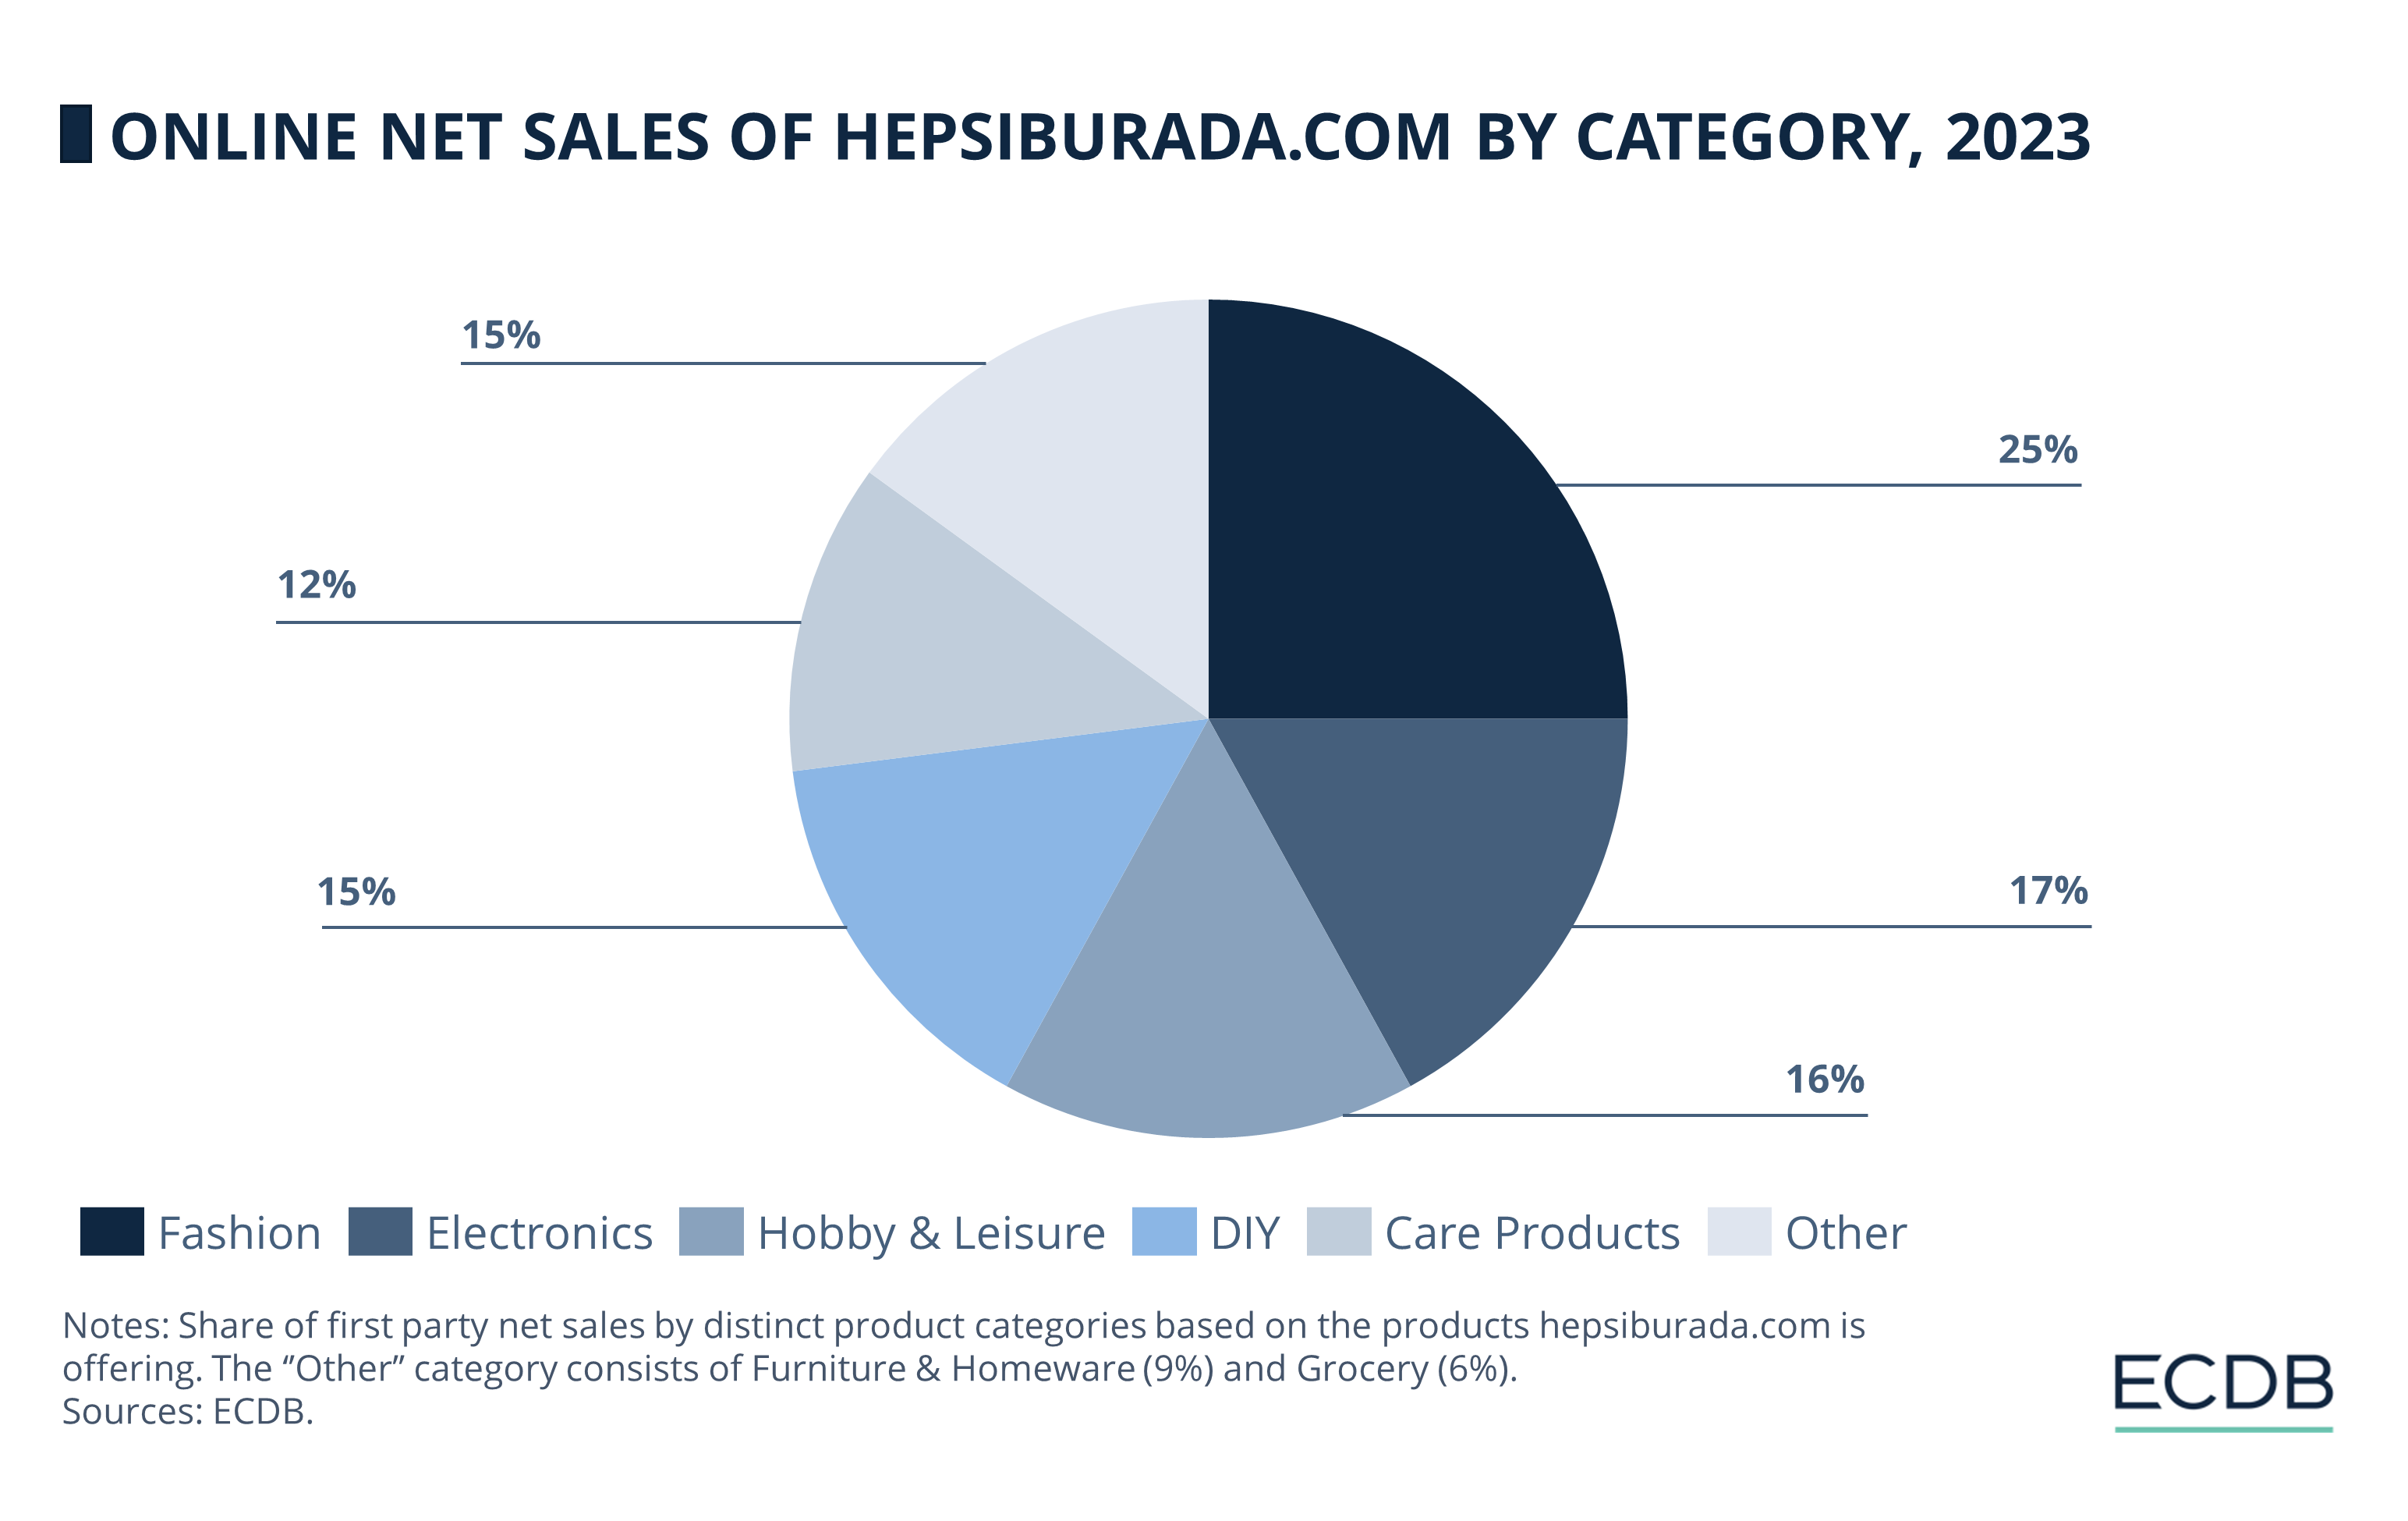 Online Net Sales of Hepsiburada.com by Category, 2023